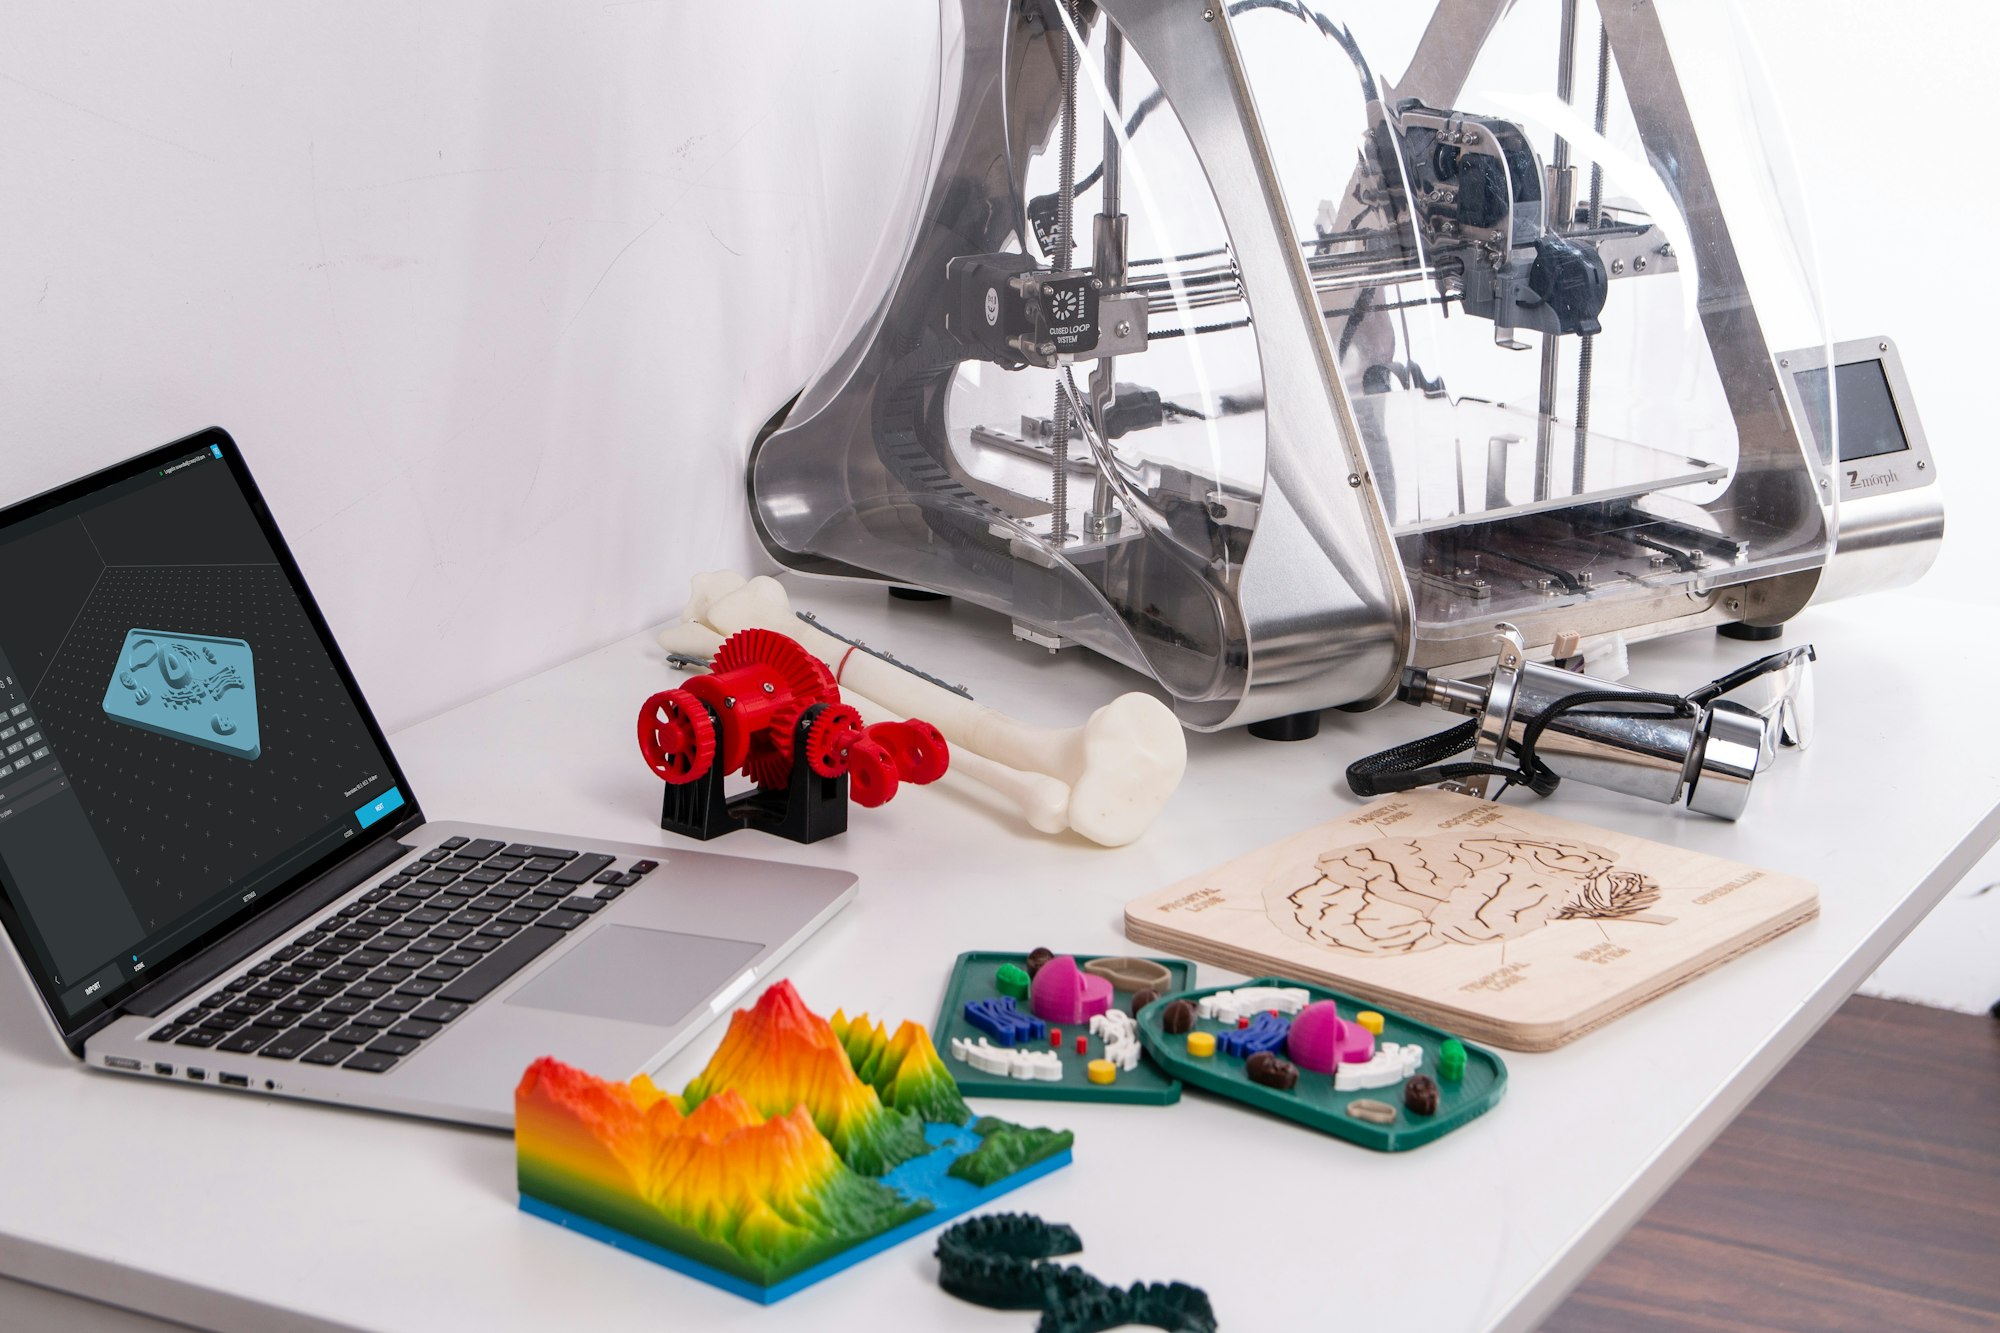 முப்பரிமான அச்சுப்பொறி (3D Printer)